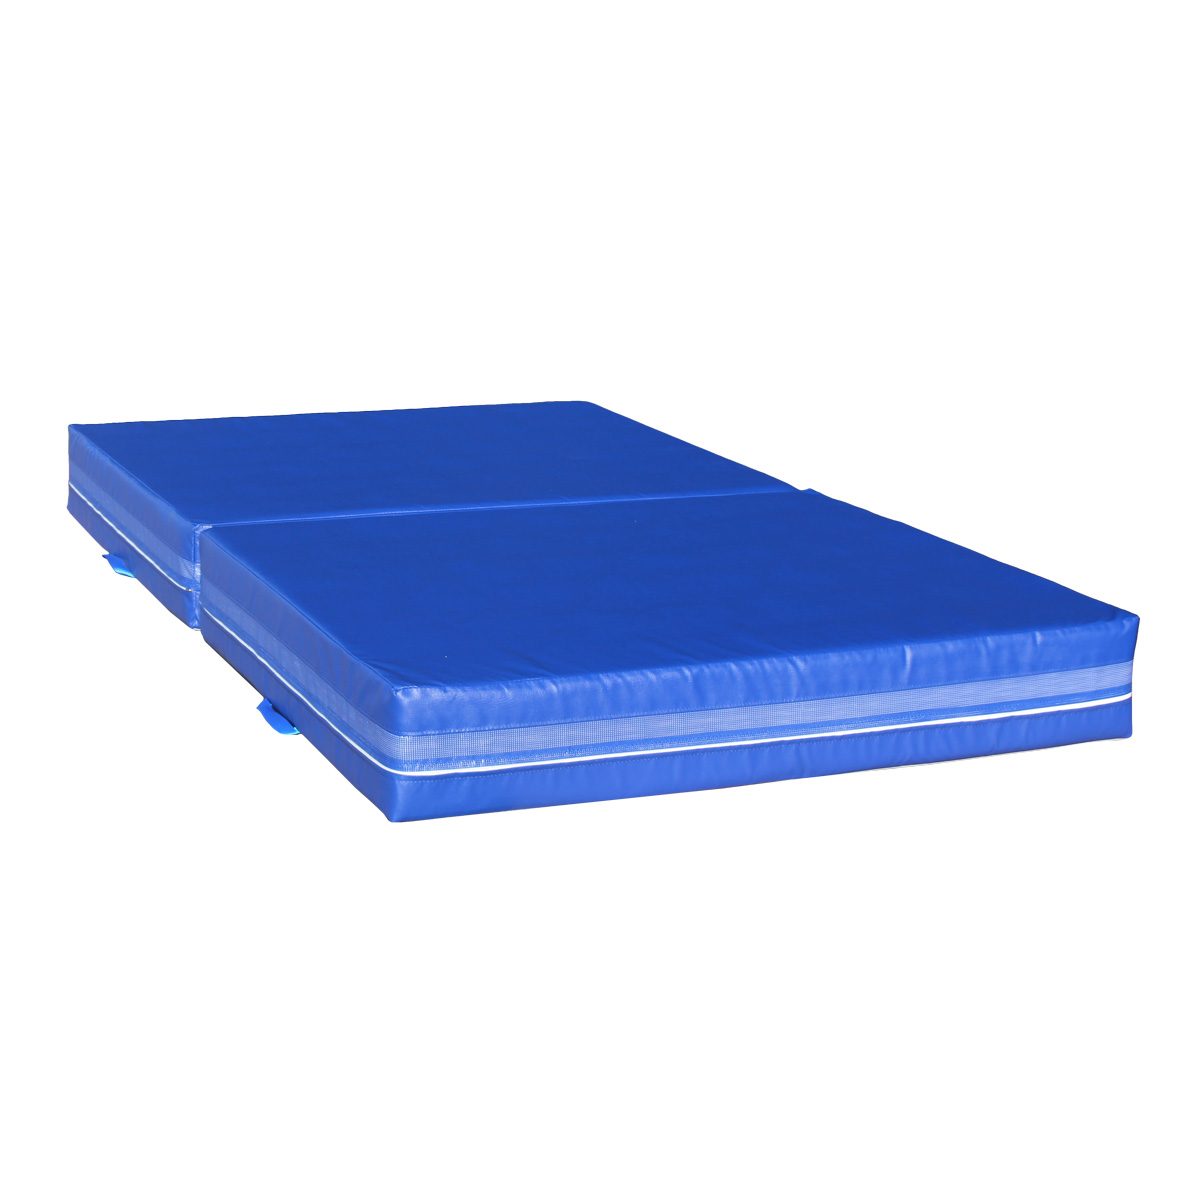 Dopadová skládací žíněnka MASTER T21 - 200 x 120 x 20 cm - modrá